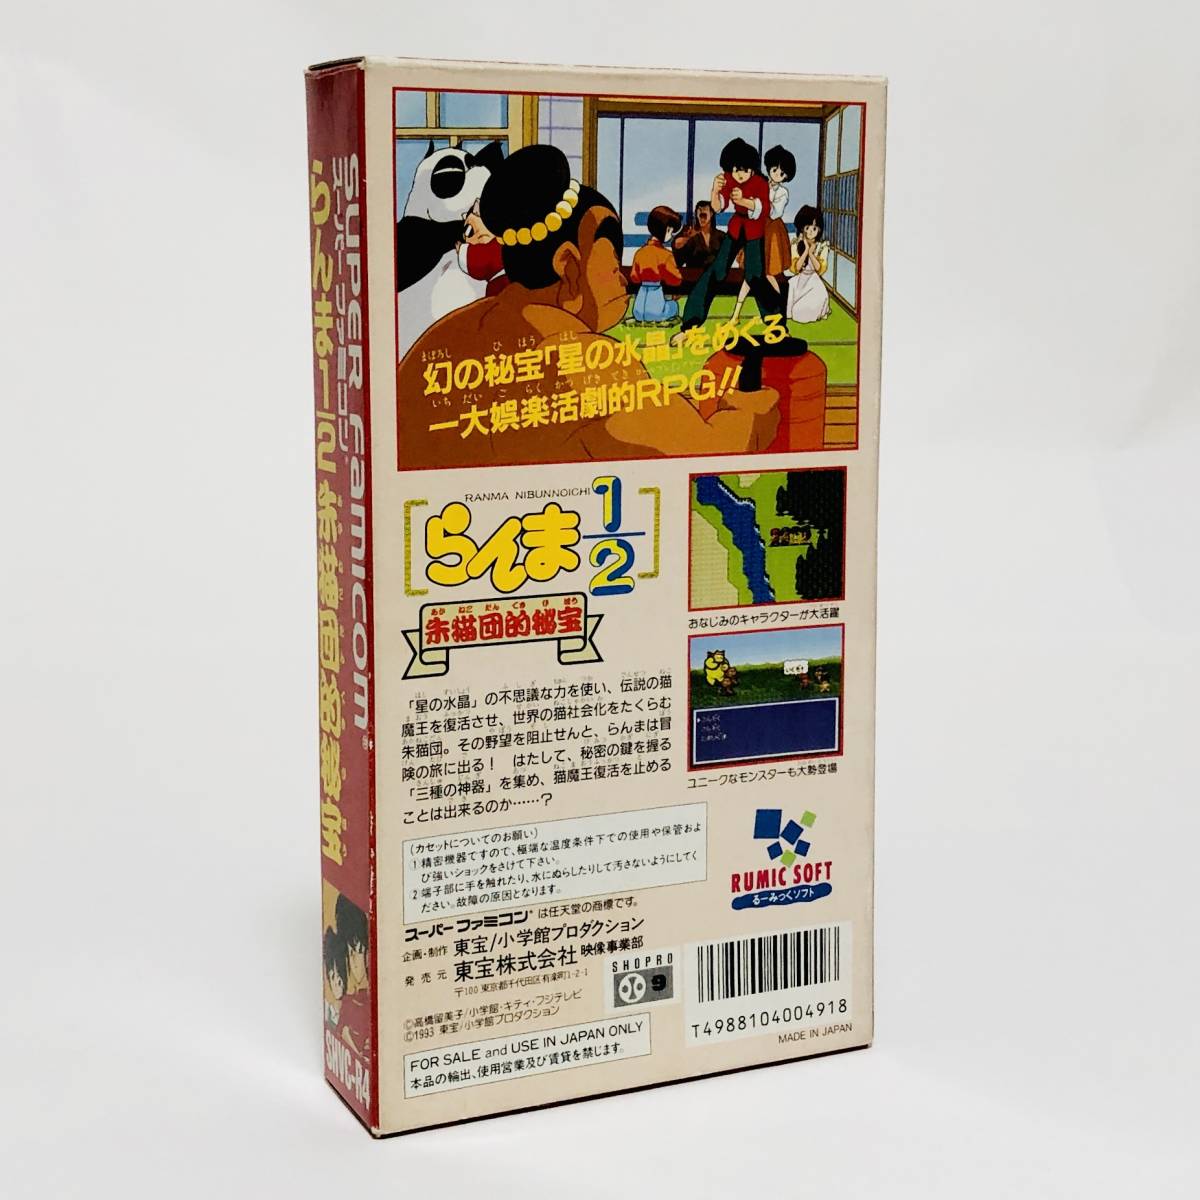 スーパーファミコン らんま1/2 朱猫団的秘宝 箱説付き 痛みあり Nintendo Super Famicom Ranma 1/2: Akanekodan Teki Hihou CIB Tested_画像3